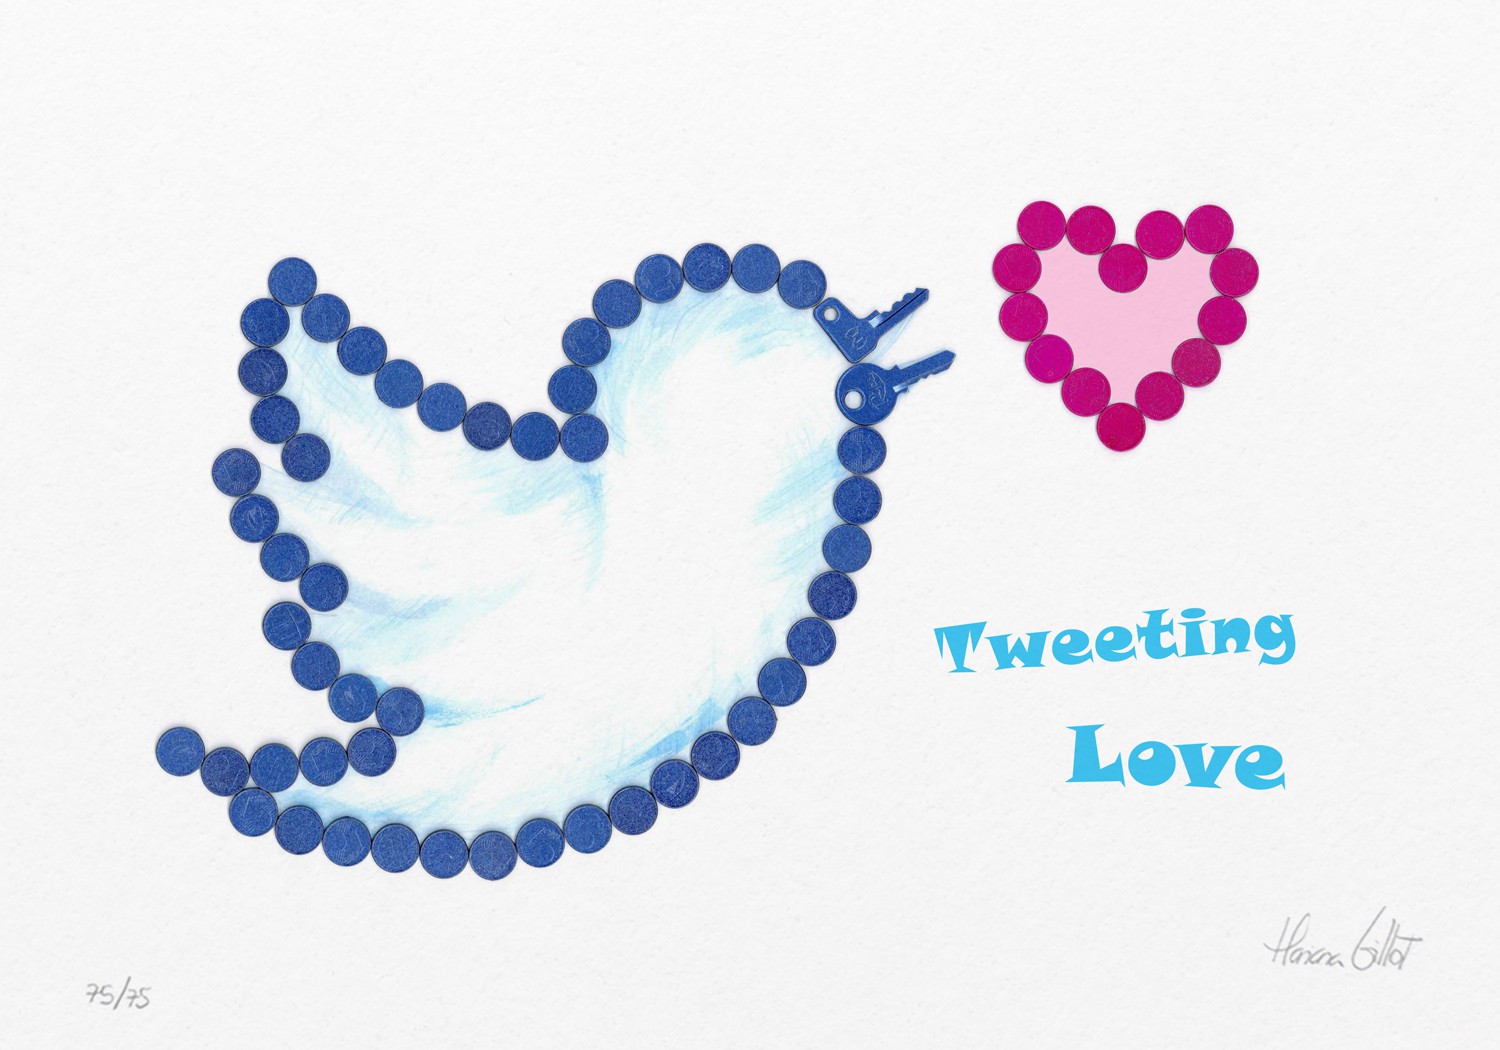 Tweeting Love